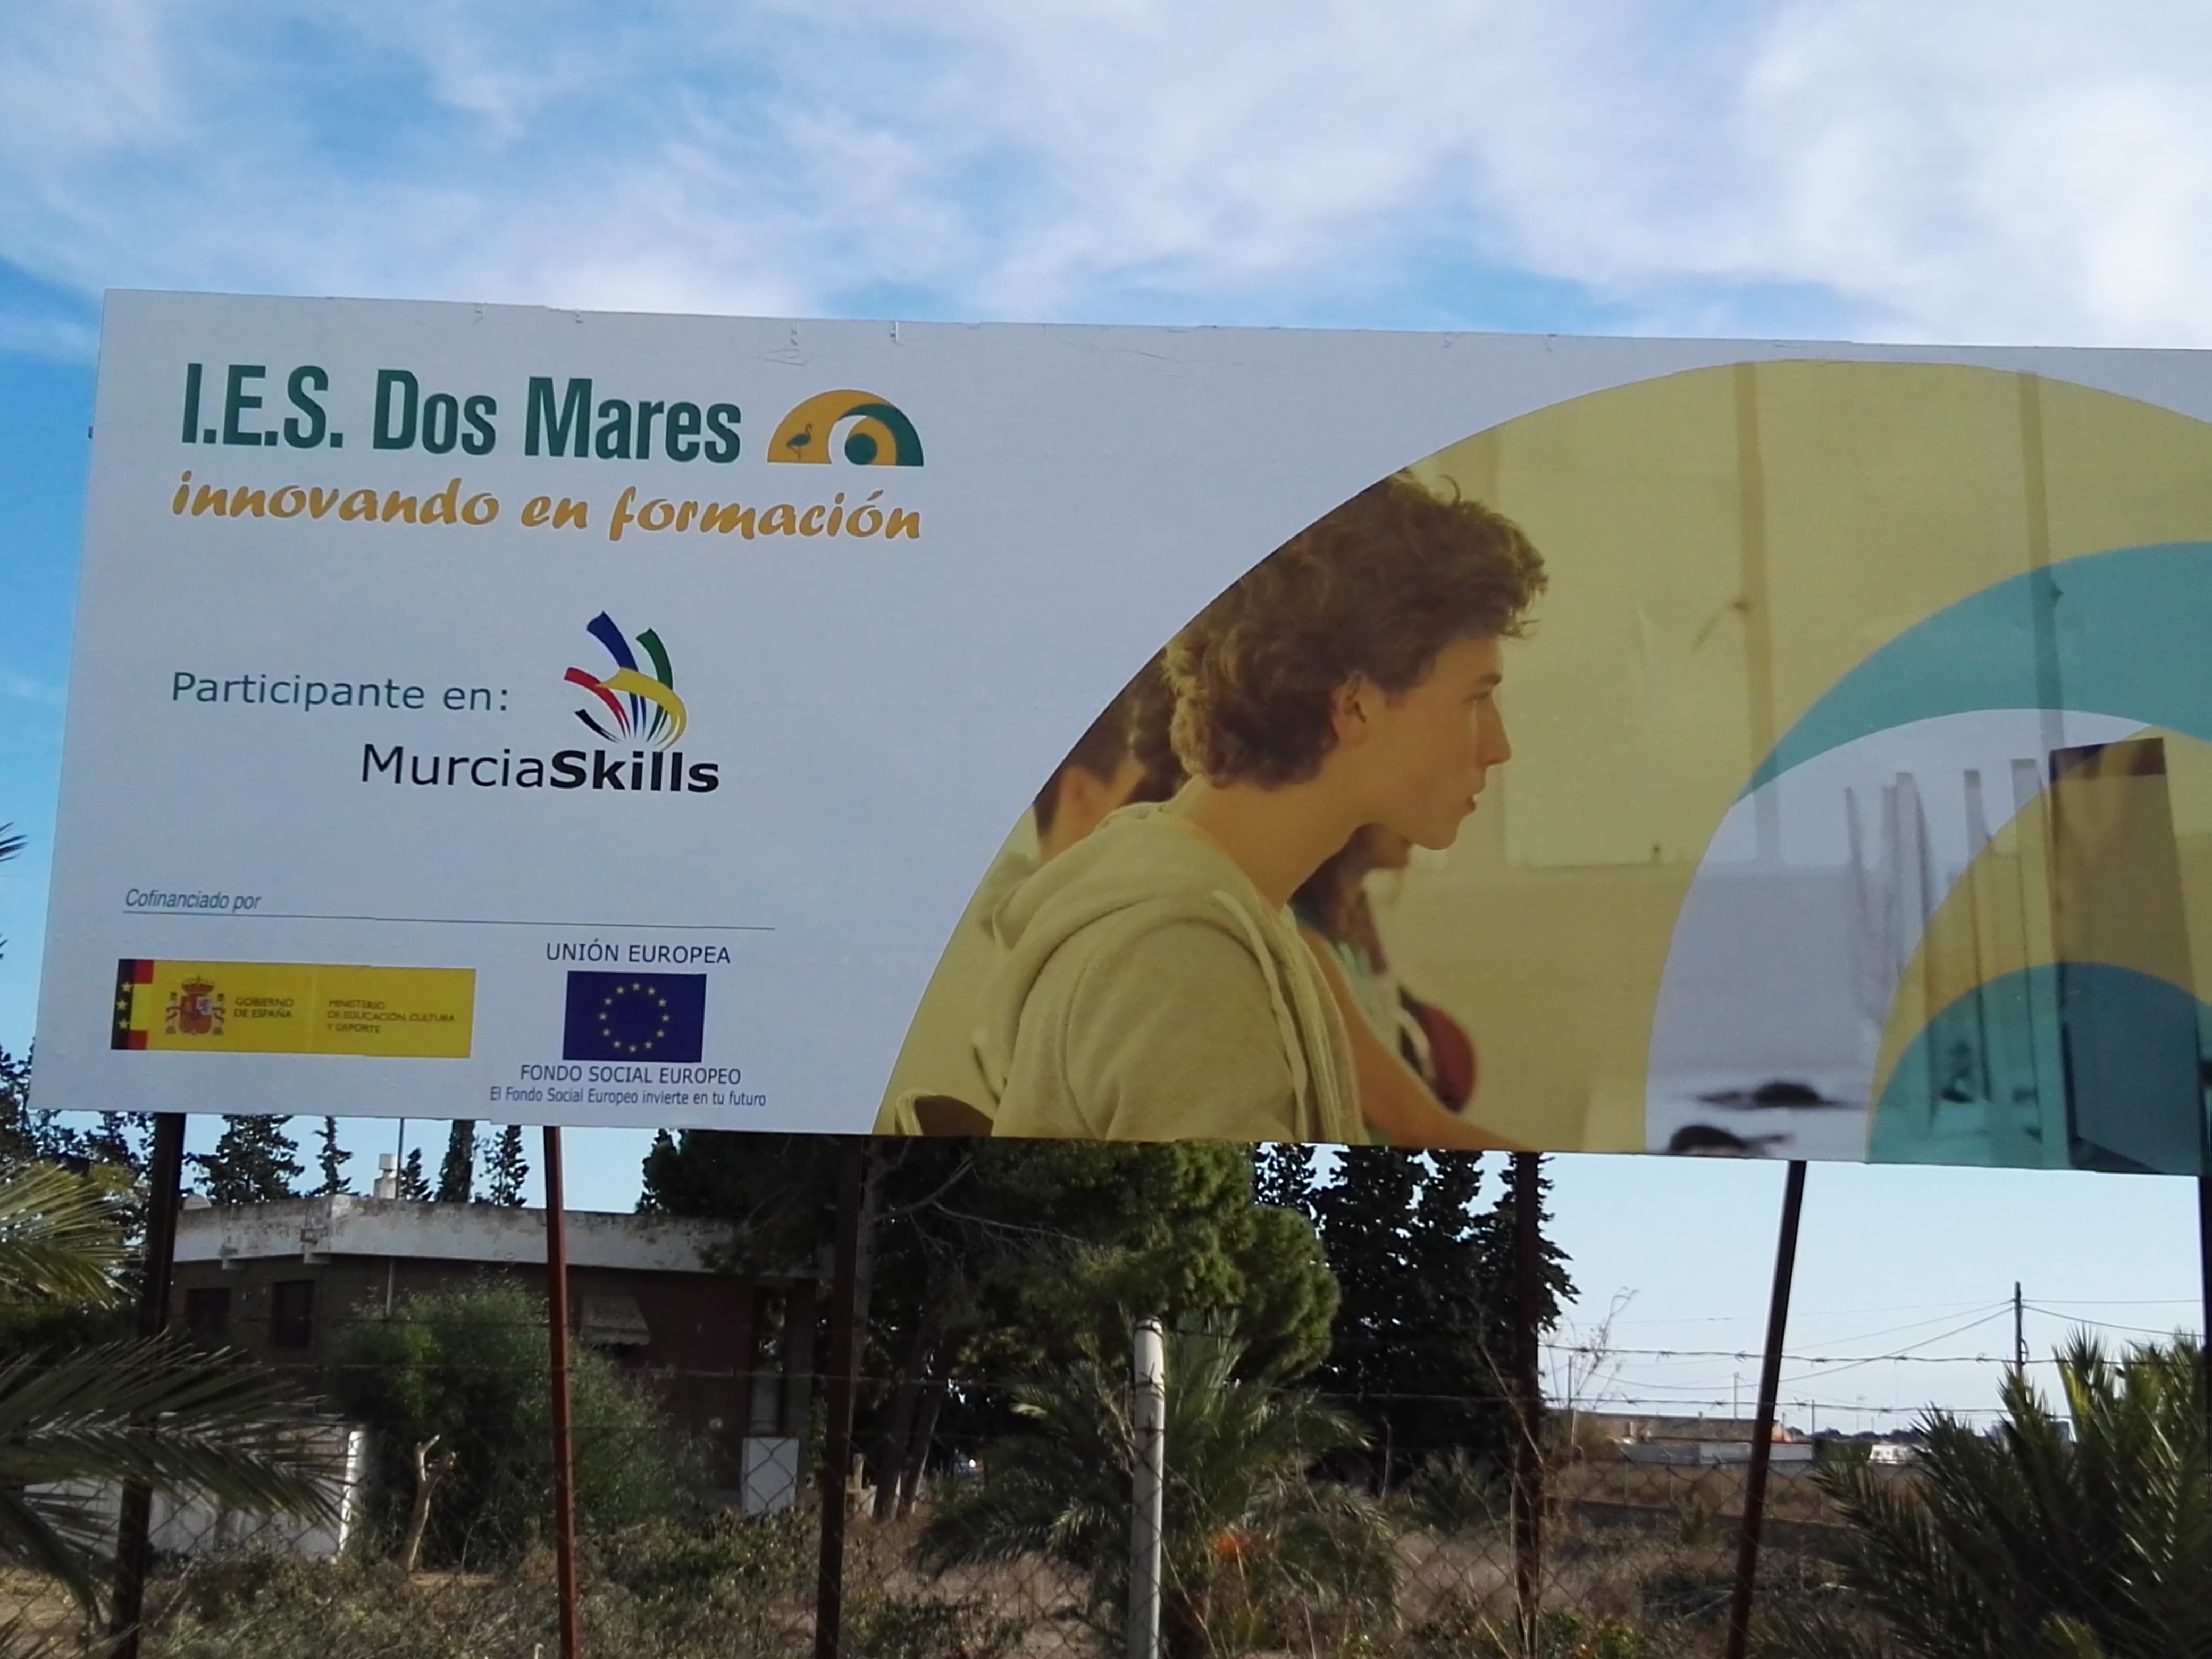 Valla publicitaria con motivo de la participación del I.E.S. Dos Mares en MurciaSkills.